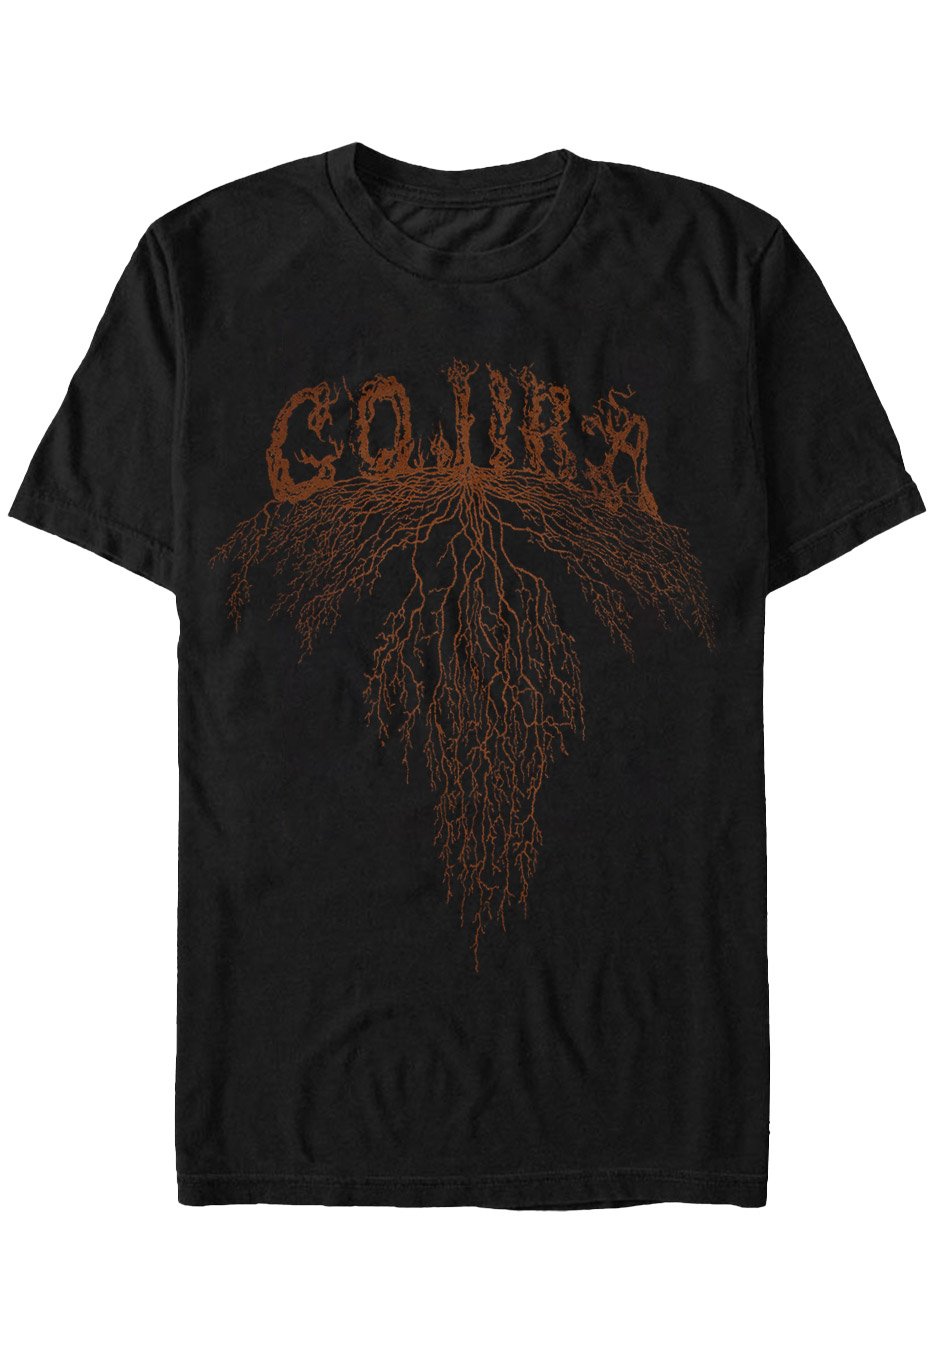 Gojira - Roots - T-Shirt